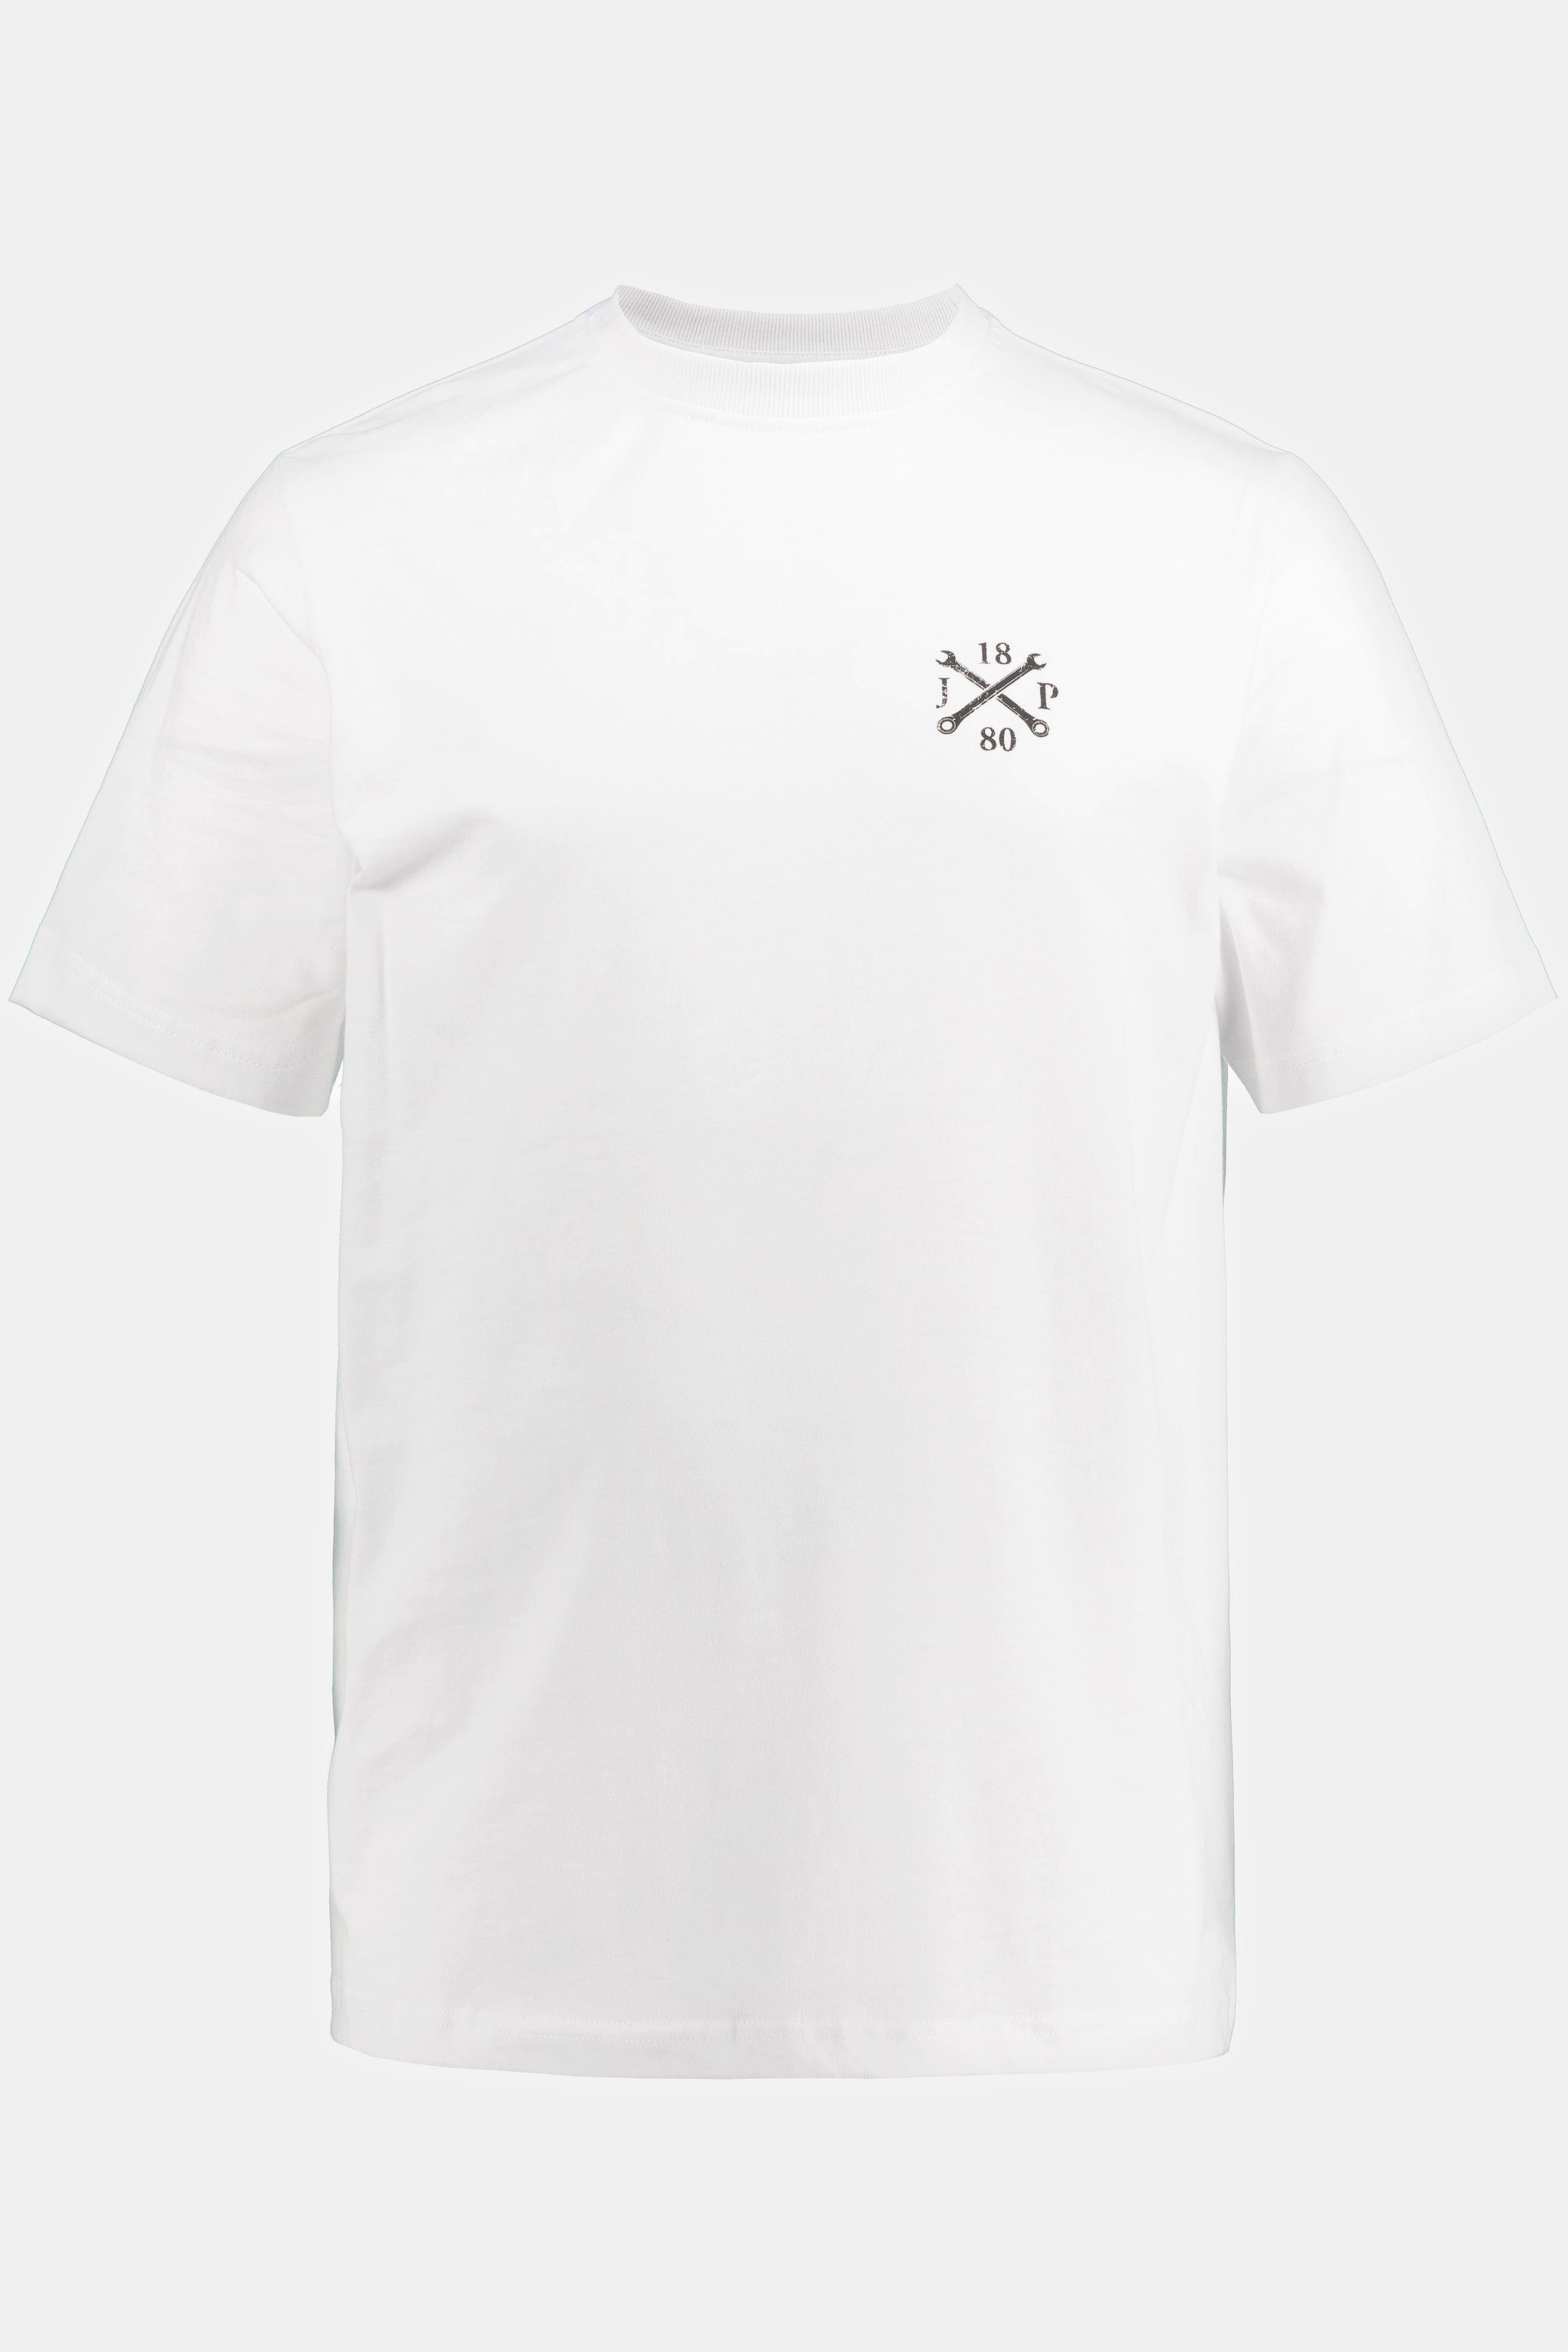 Ironworker Rückenprint JP1880 T-Shirt Halbarm T-Shirt